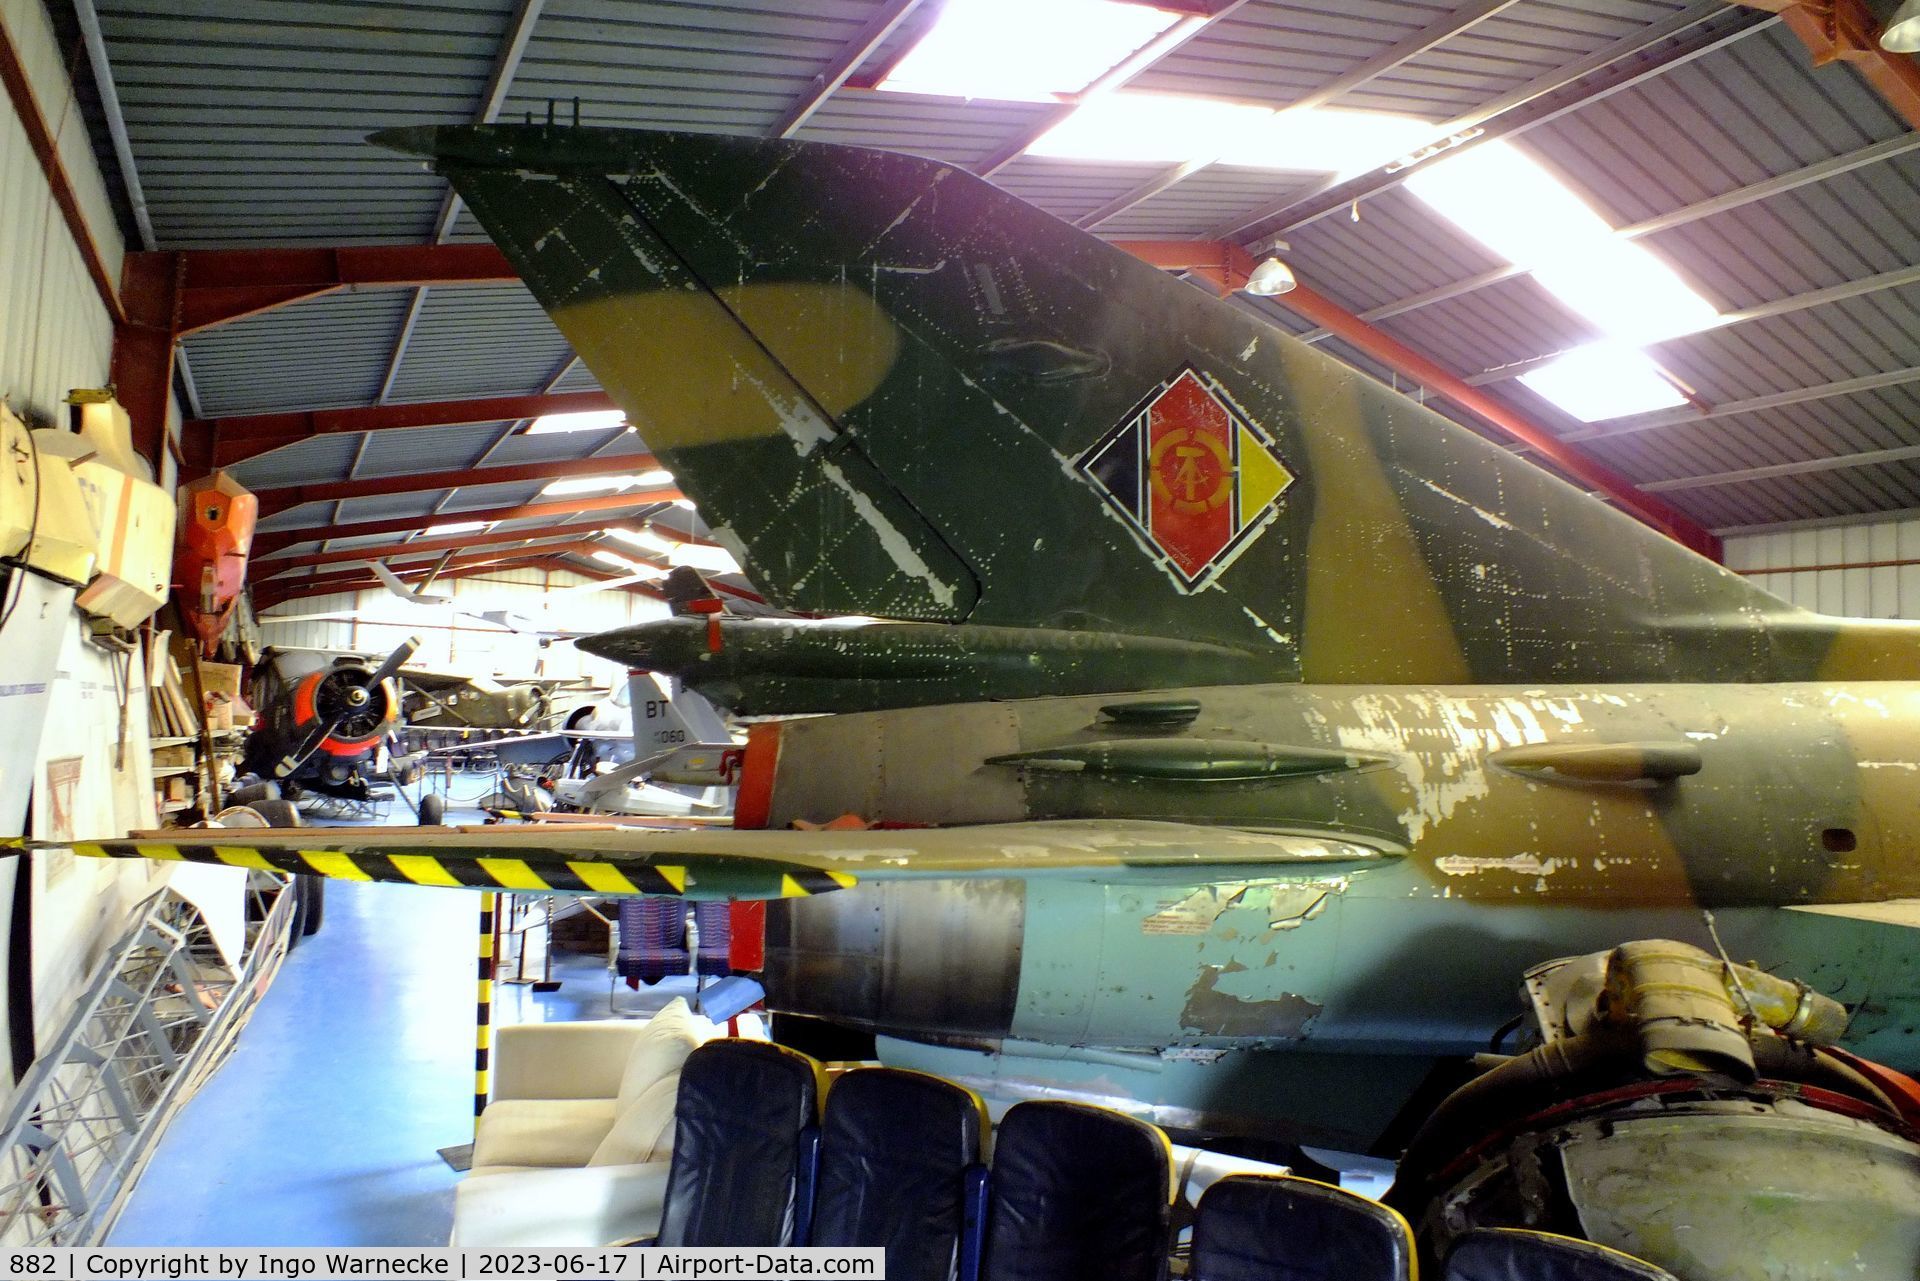 882, Mikoyan-Gurevich MiG-21SPS C/N 94A5207, Mikoyan i Gurevich MiG-21SPS FISHBED-F at the Musee de l'Epopee de l'Industrie et de l'Aeronautique, Albert